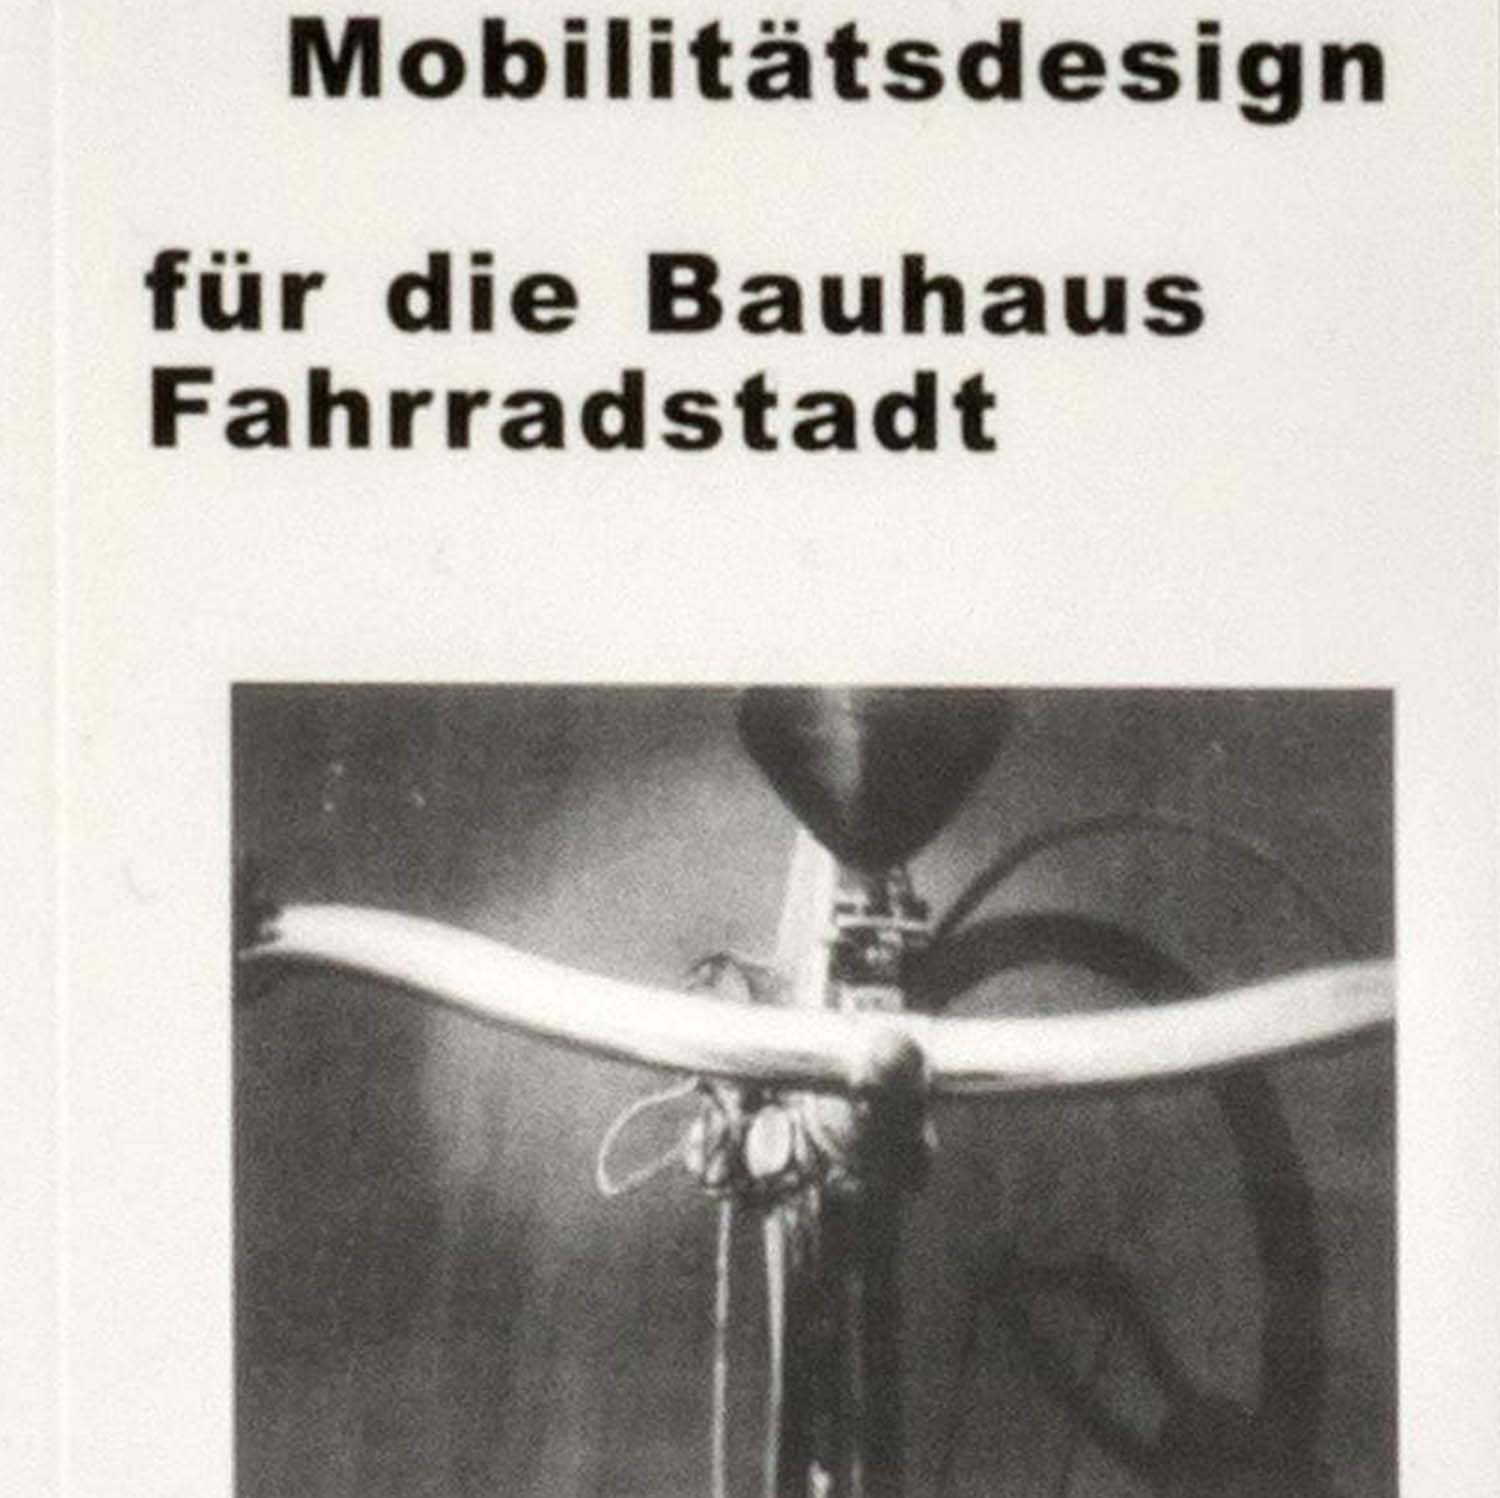 Bauhaus bisiklet şehri için mobilite tasarımı resmi